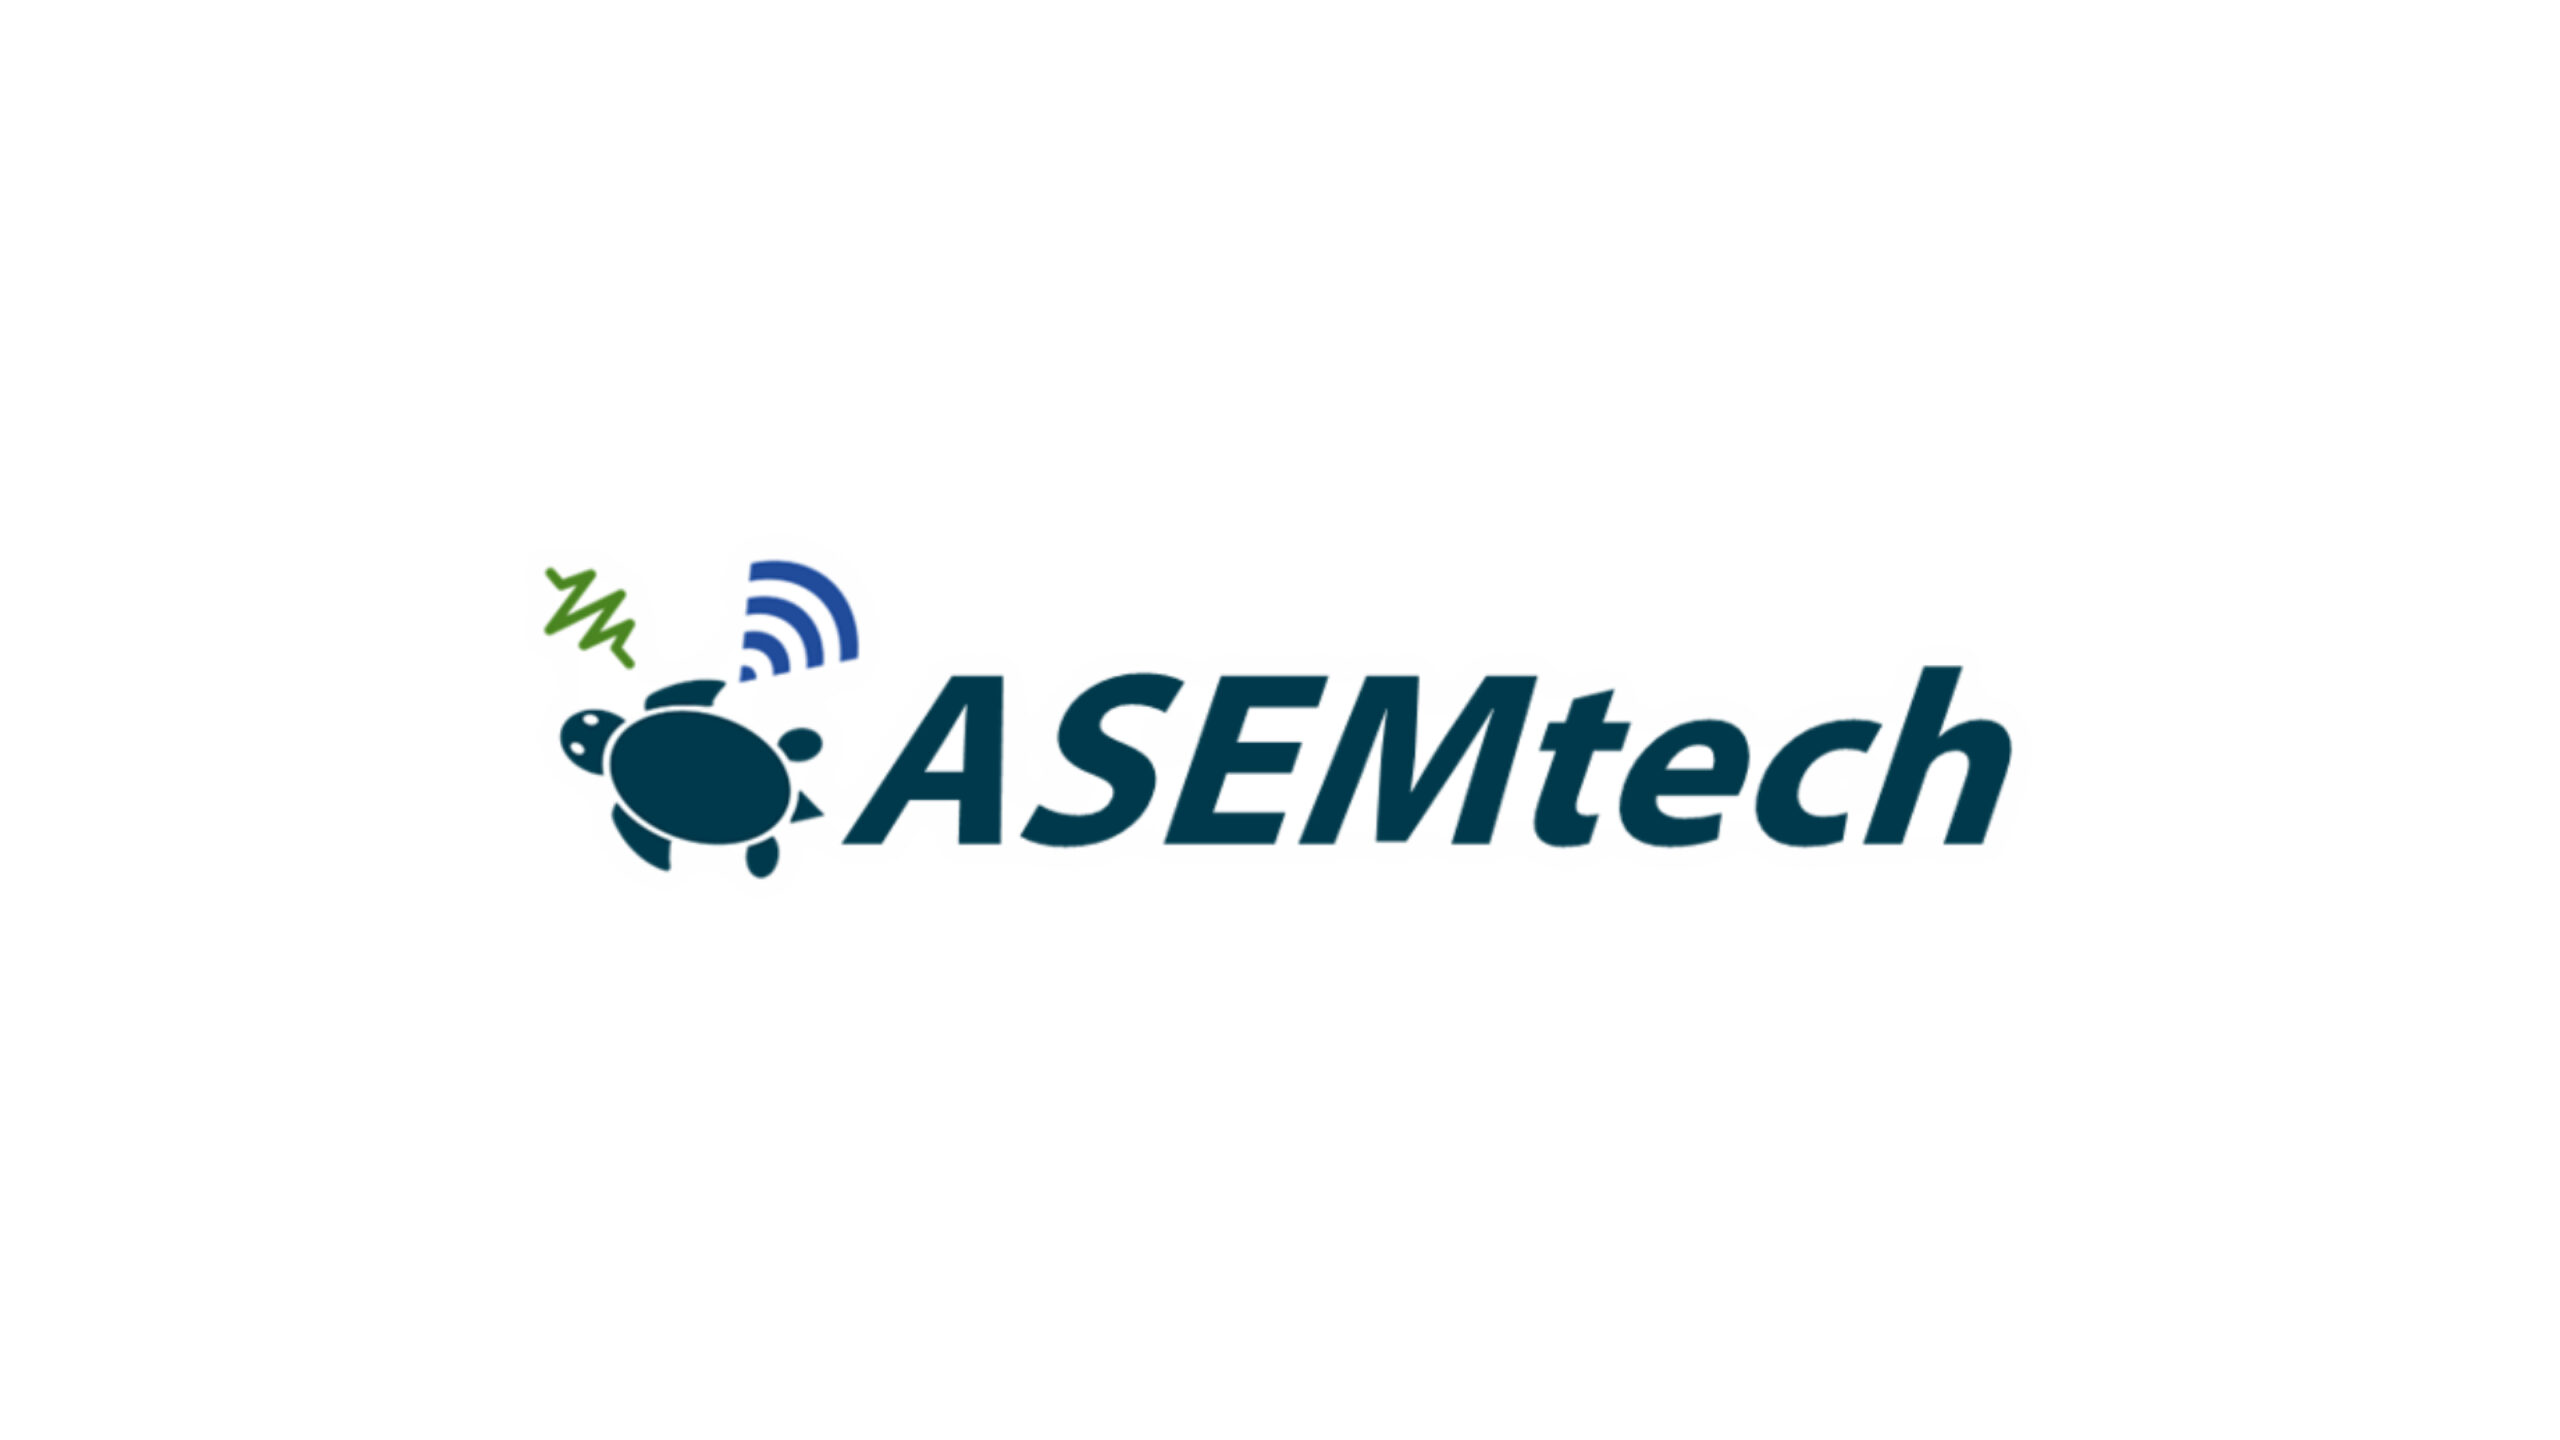 医用試作機「ASEMmed」の開発を行うASEMtech株式会社が1億円の資金調達を実施